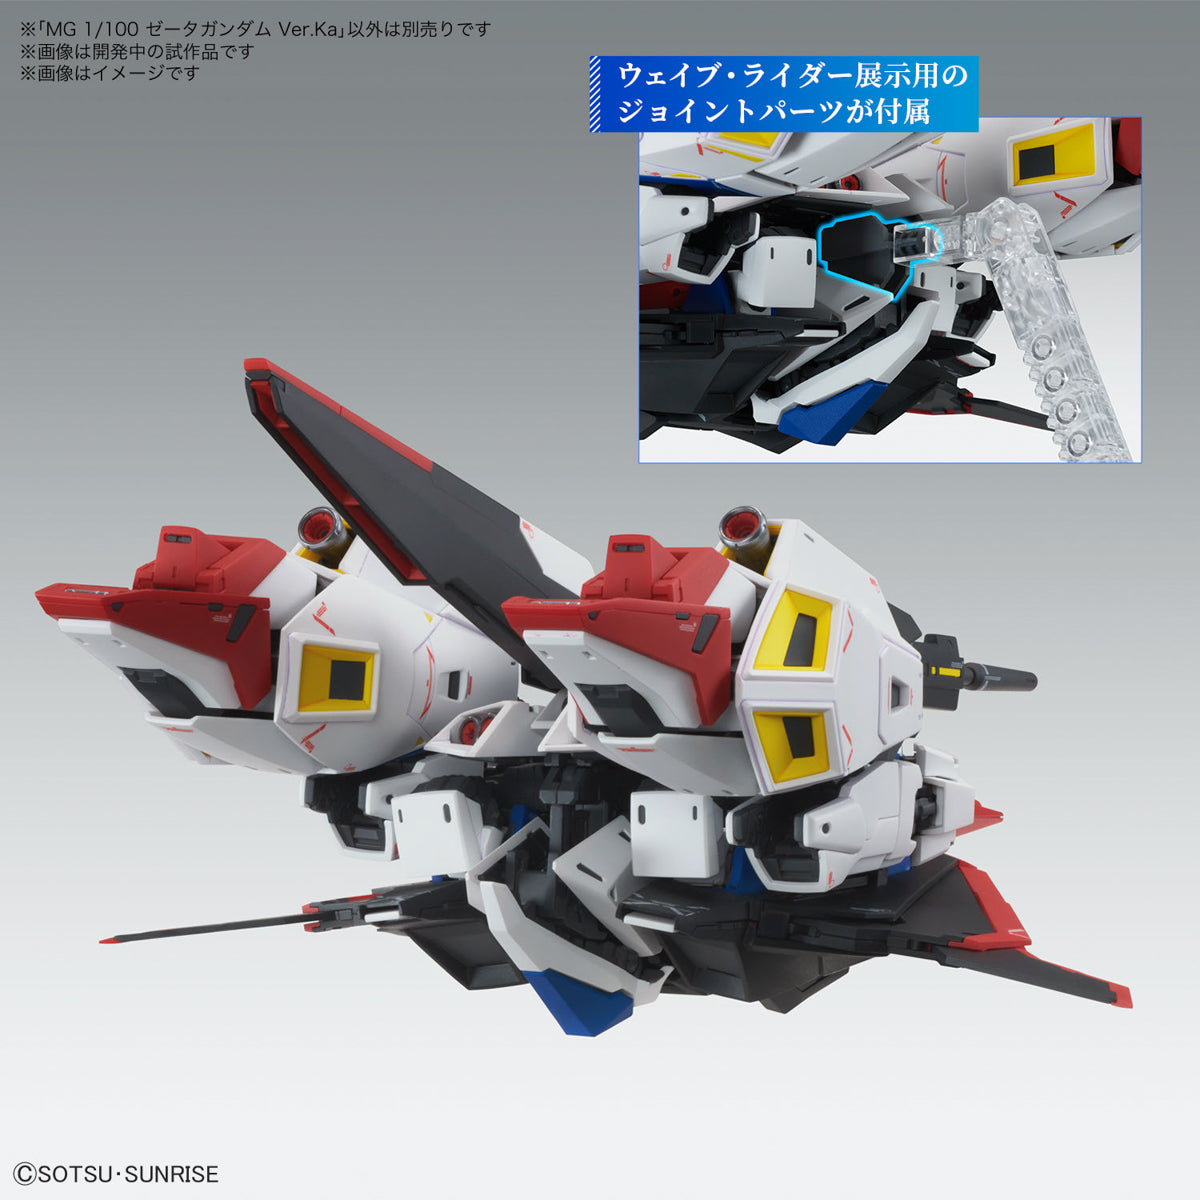 MG - MSZ-006 Zeta Gundam Ver.Ka